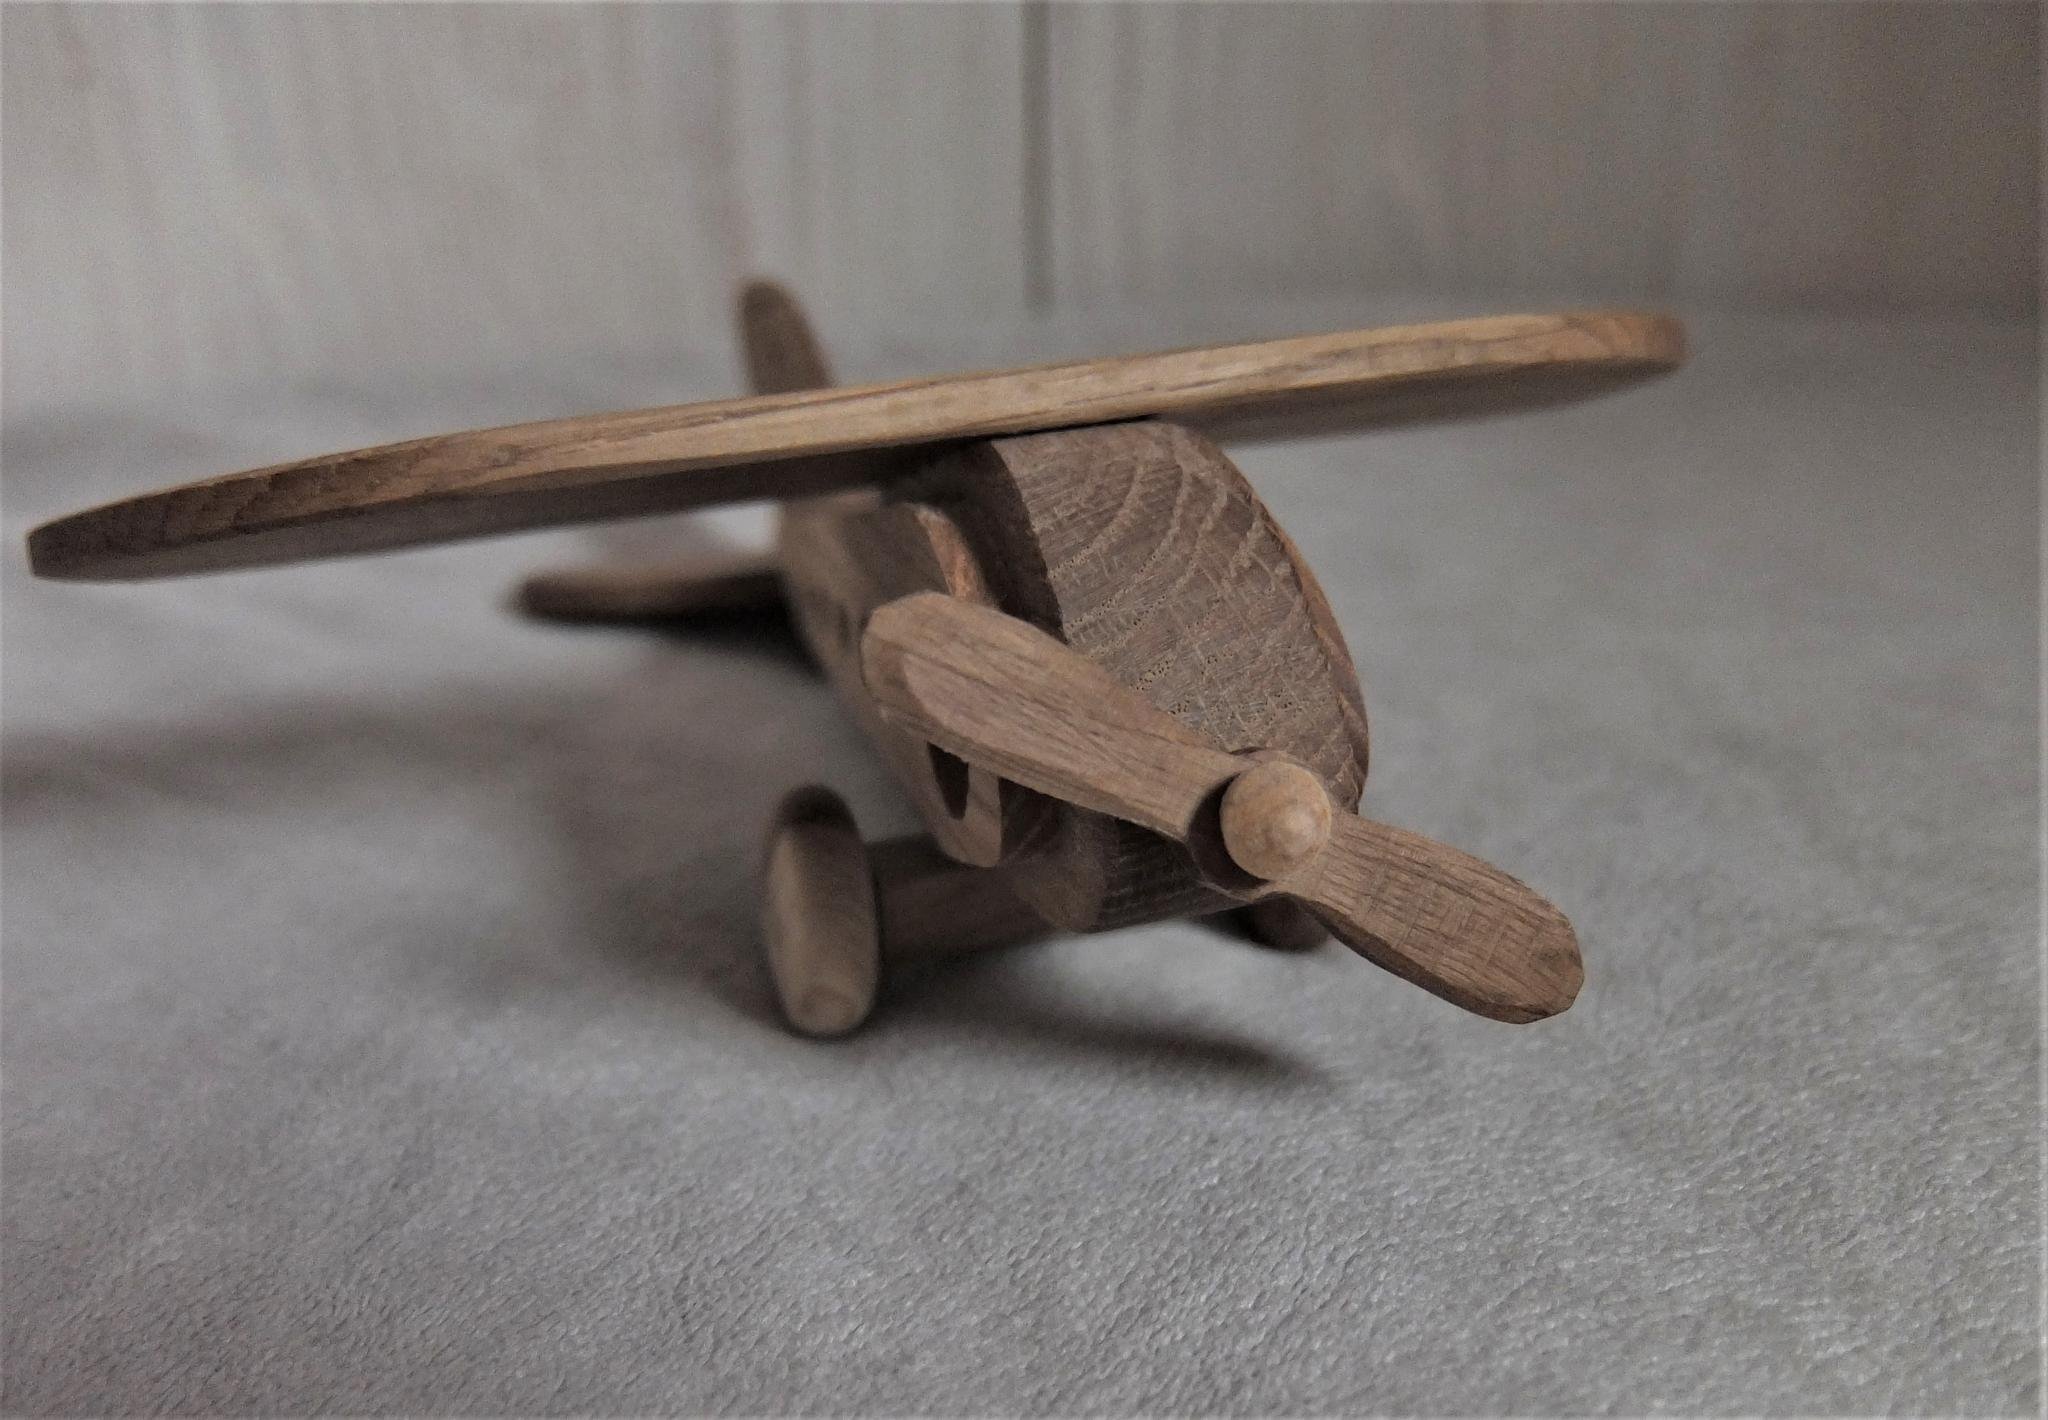 фото деревянных самолетов